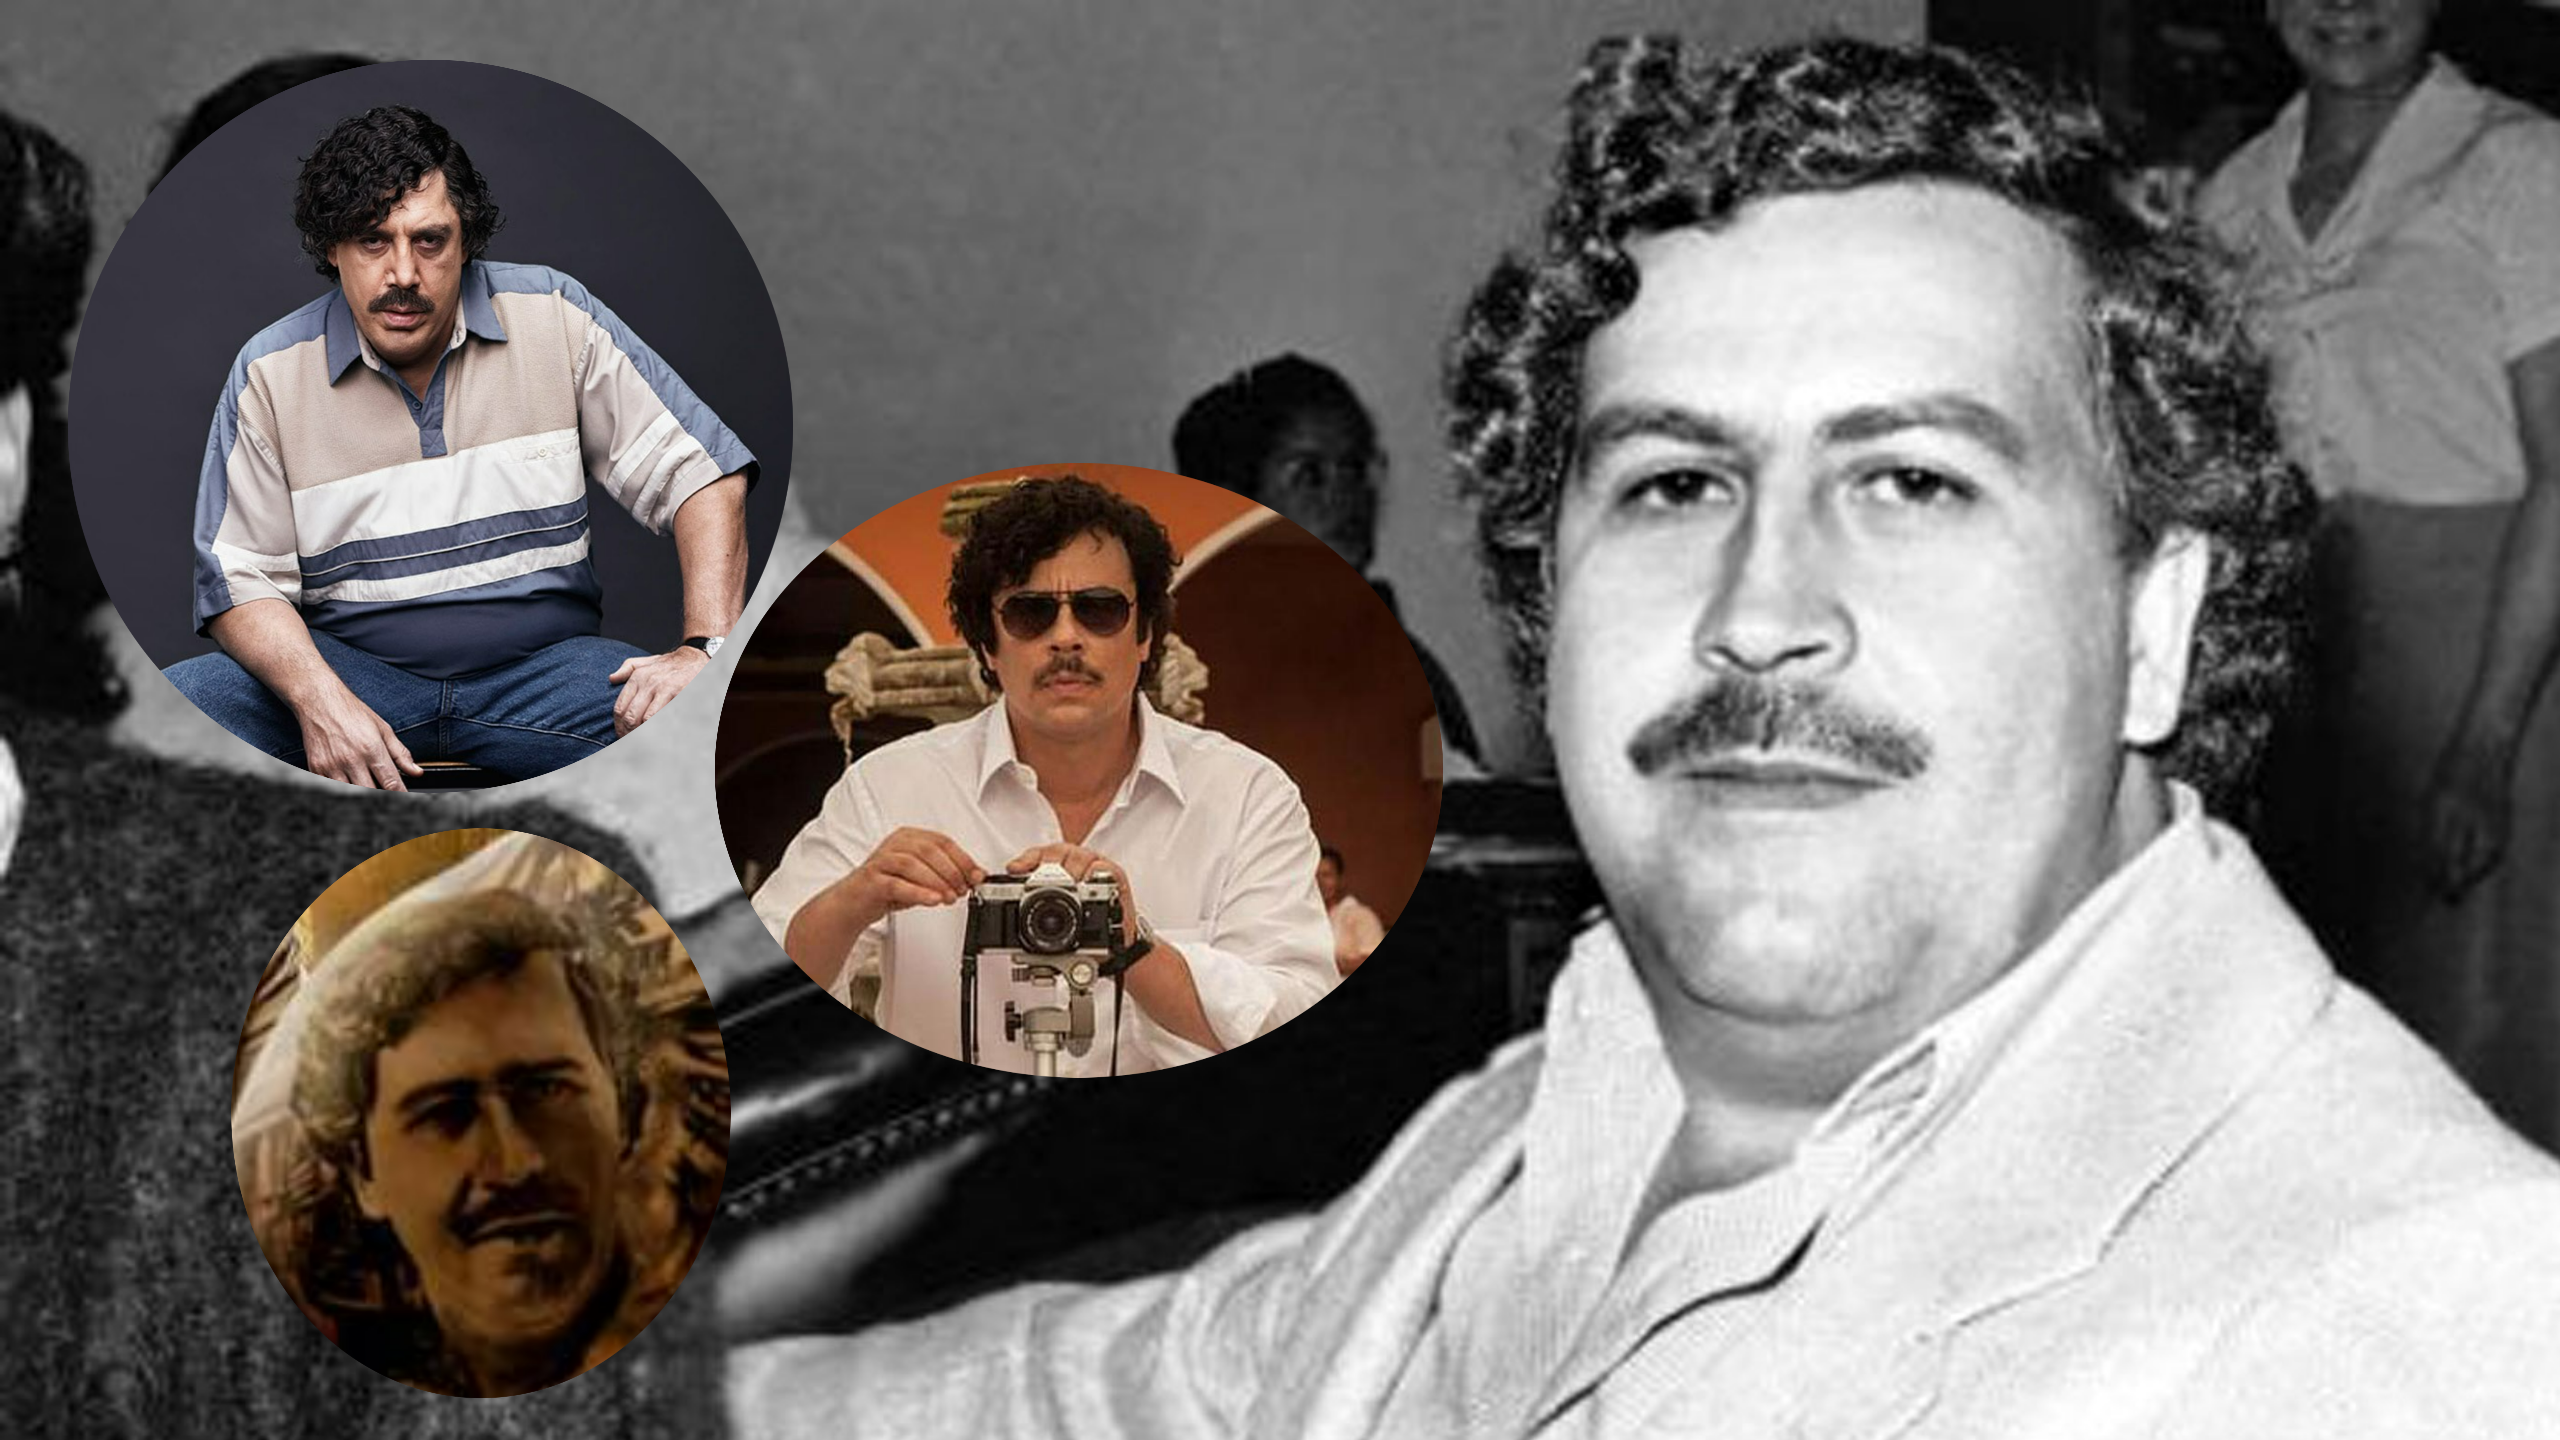 Referencias y representaciones de Pablo Escobar en películas o series que han generado polémicas 